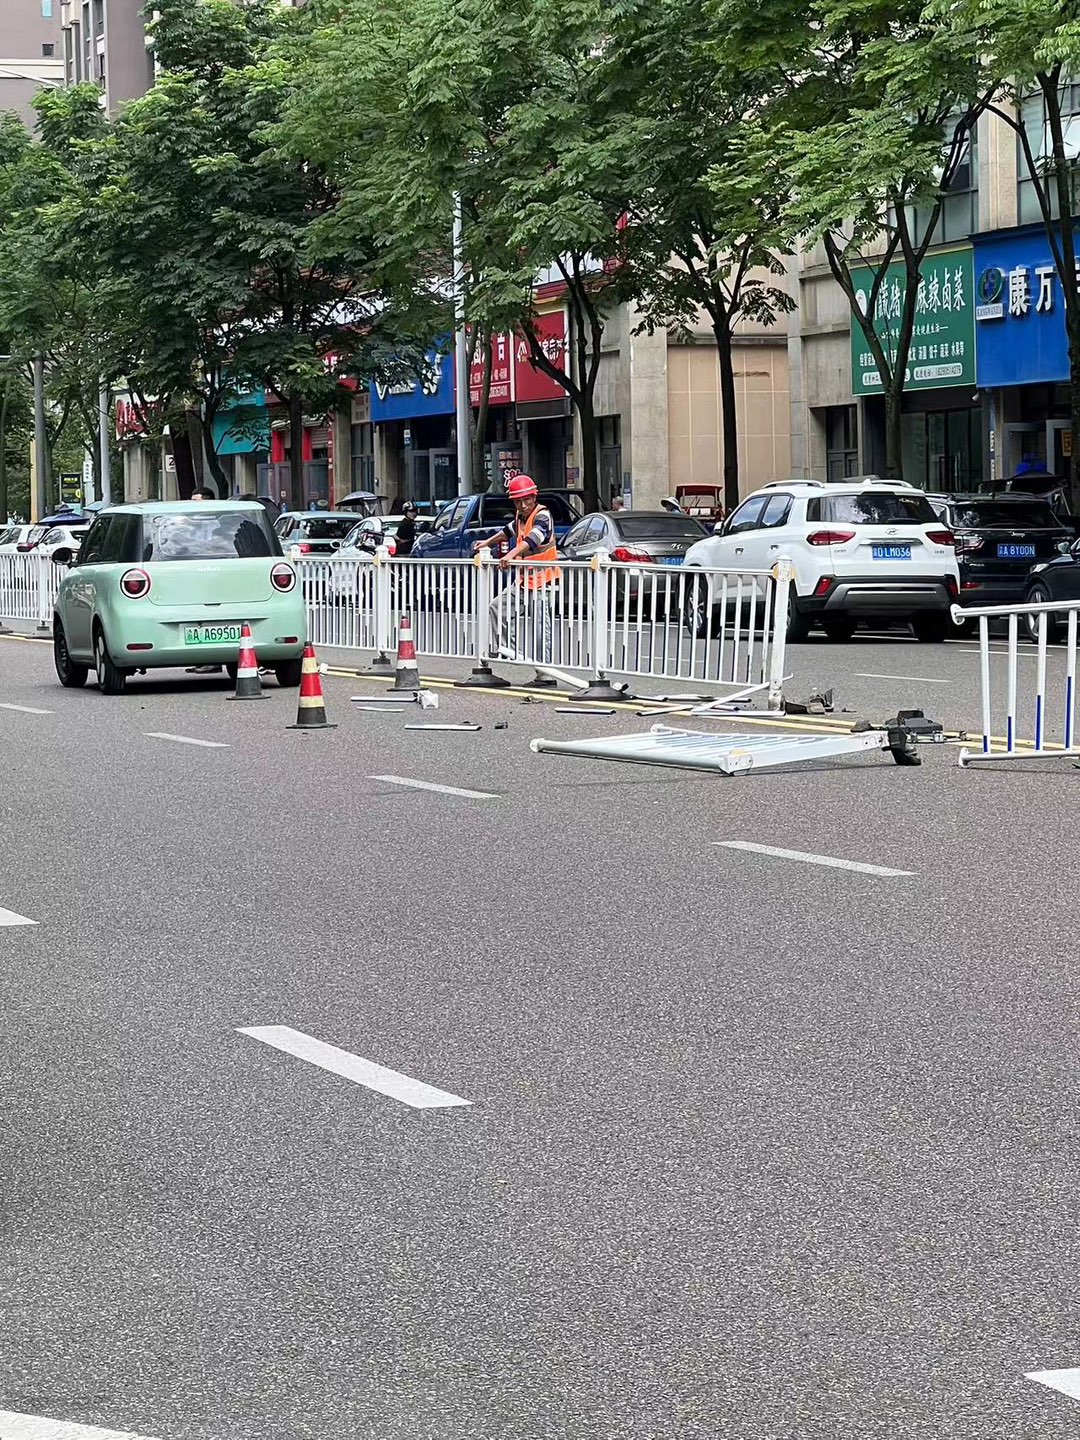 明珠上海城门口车子撞到护栏了，还好没得人员受伤